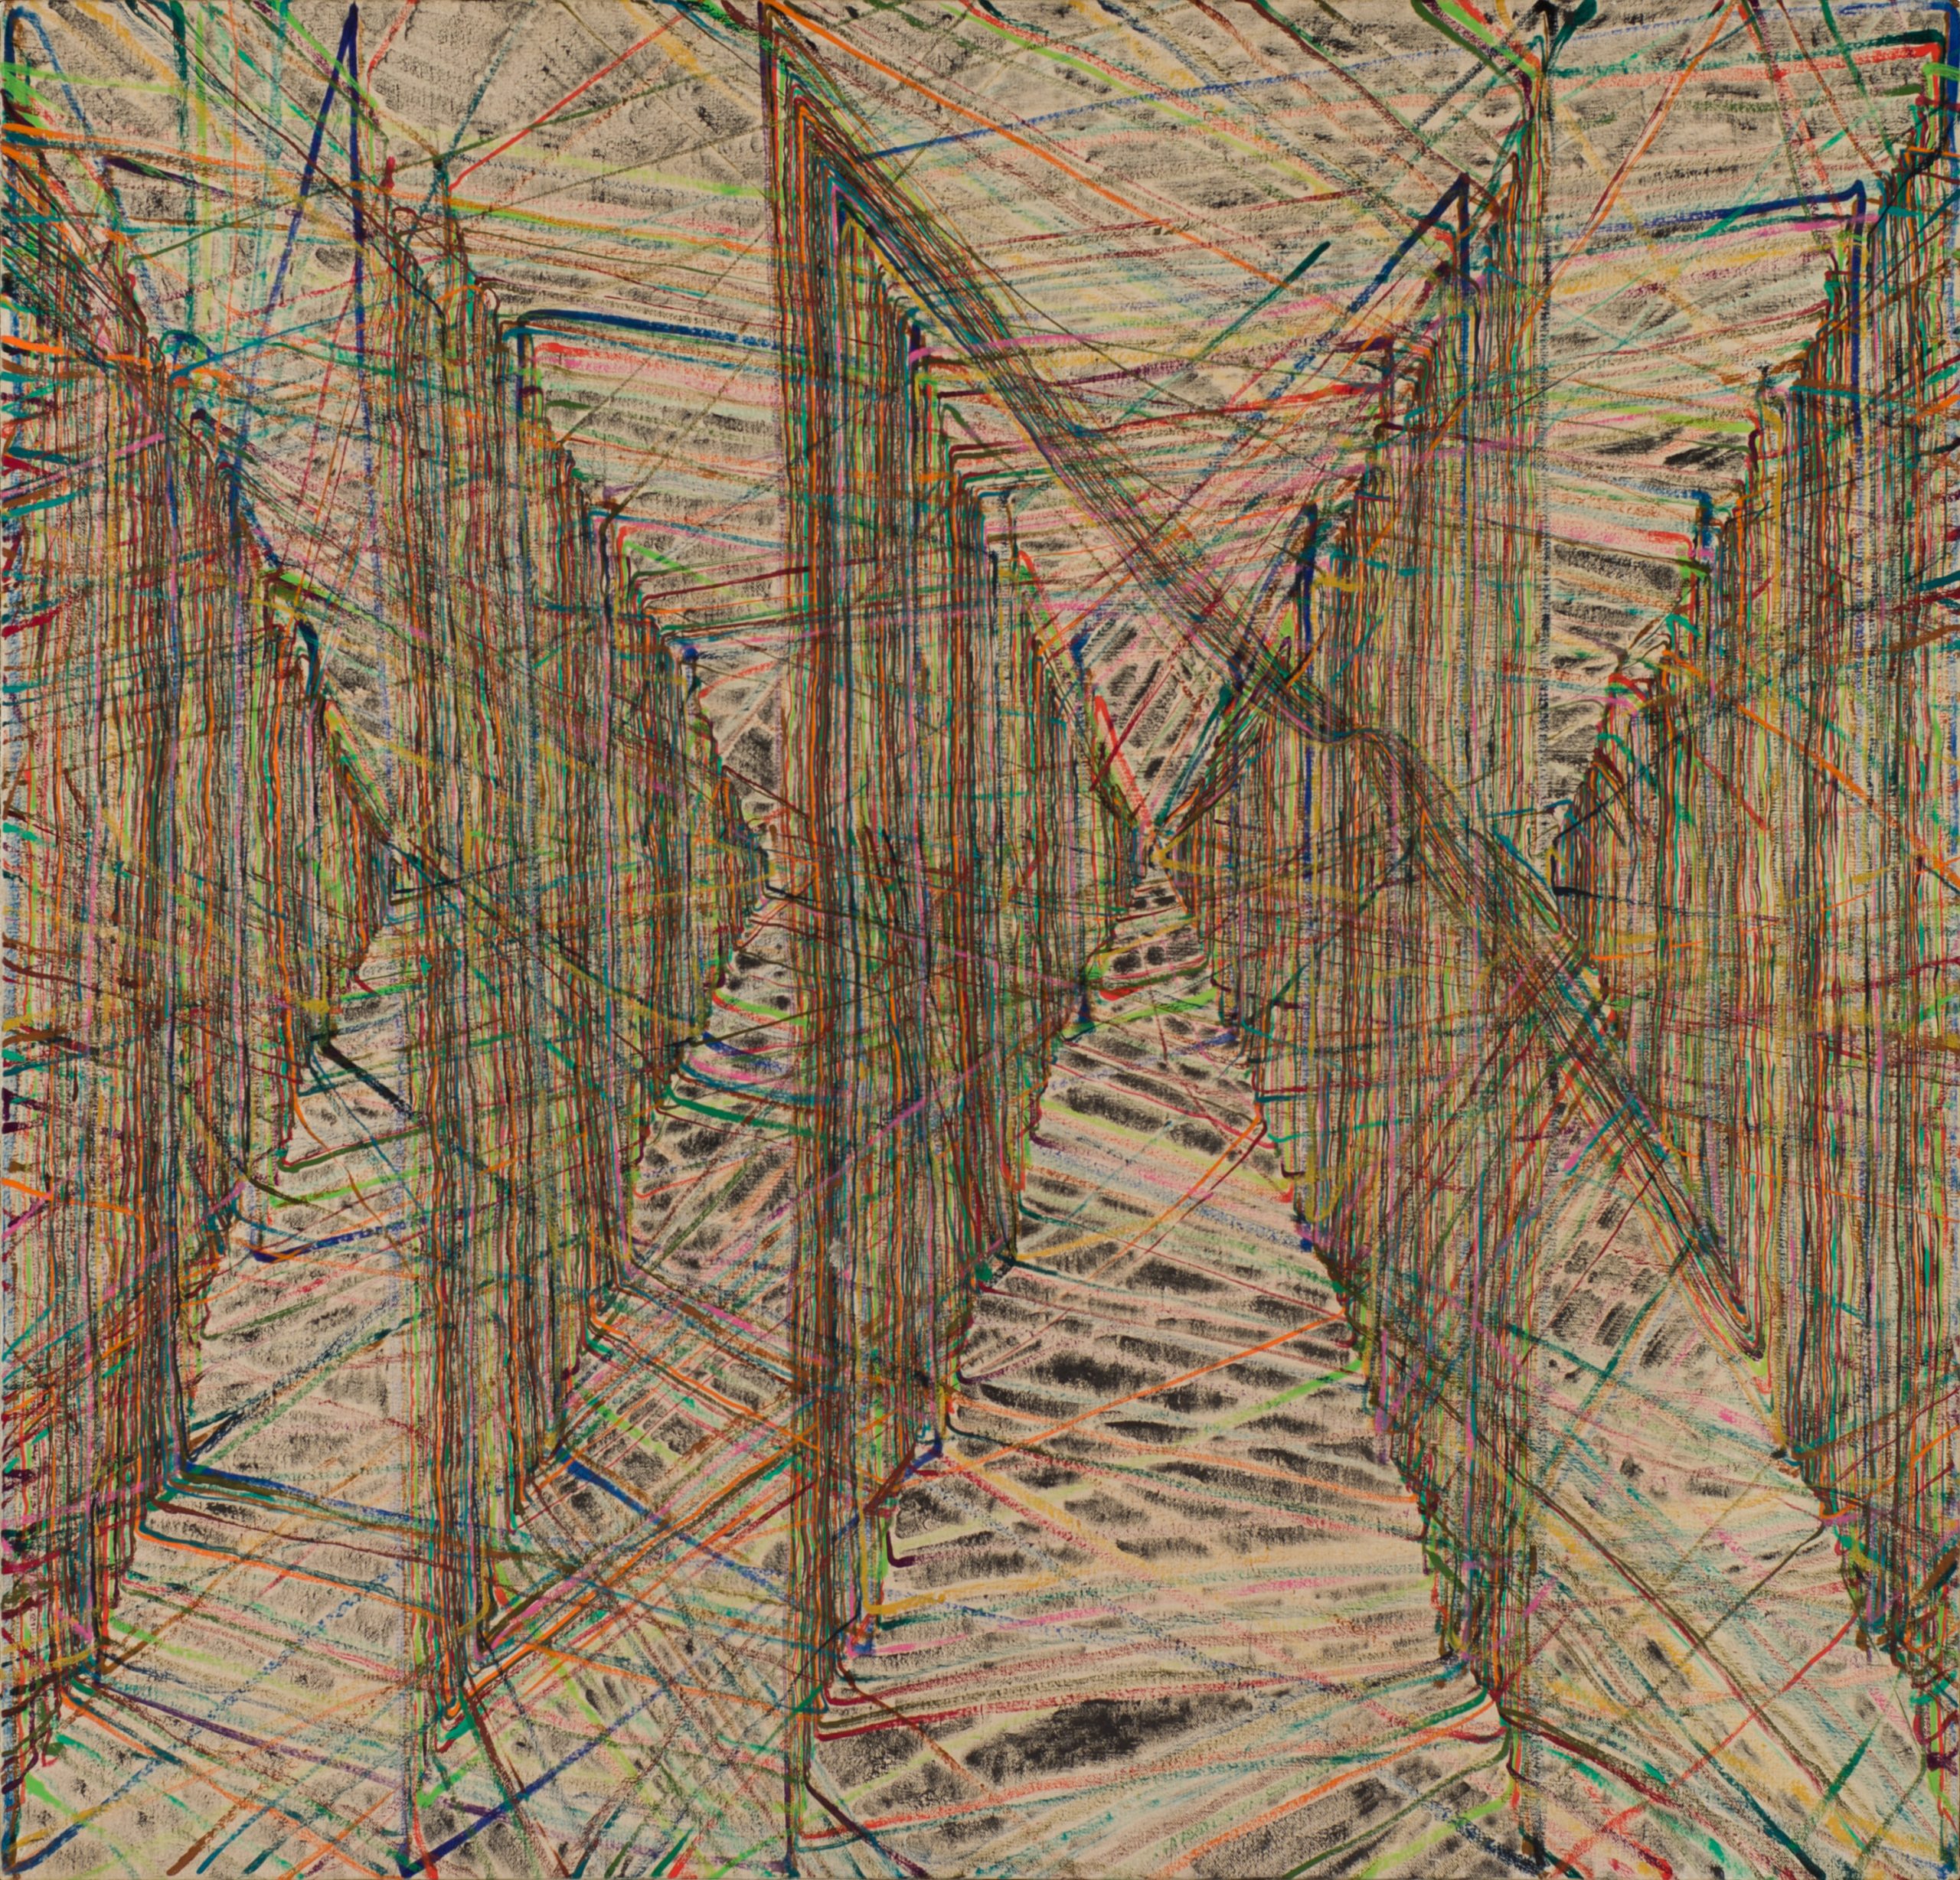 17_弗拉基米爾・可可利亞，《日落》，2005，油彩、畫布，132.5 x 127 公分。藝術家與臺北市立美術館提供。